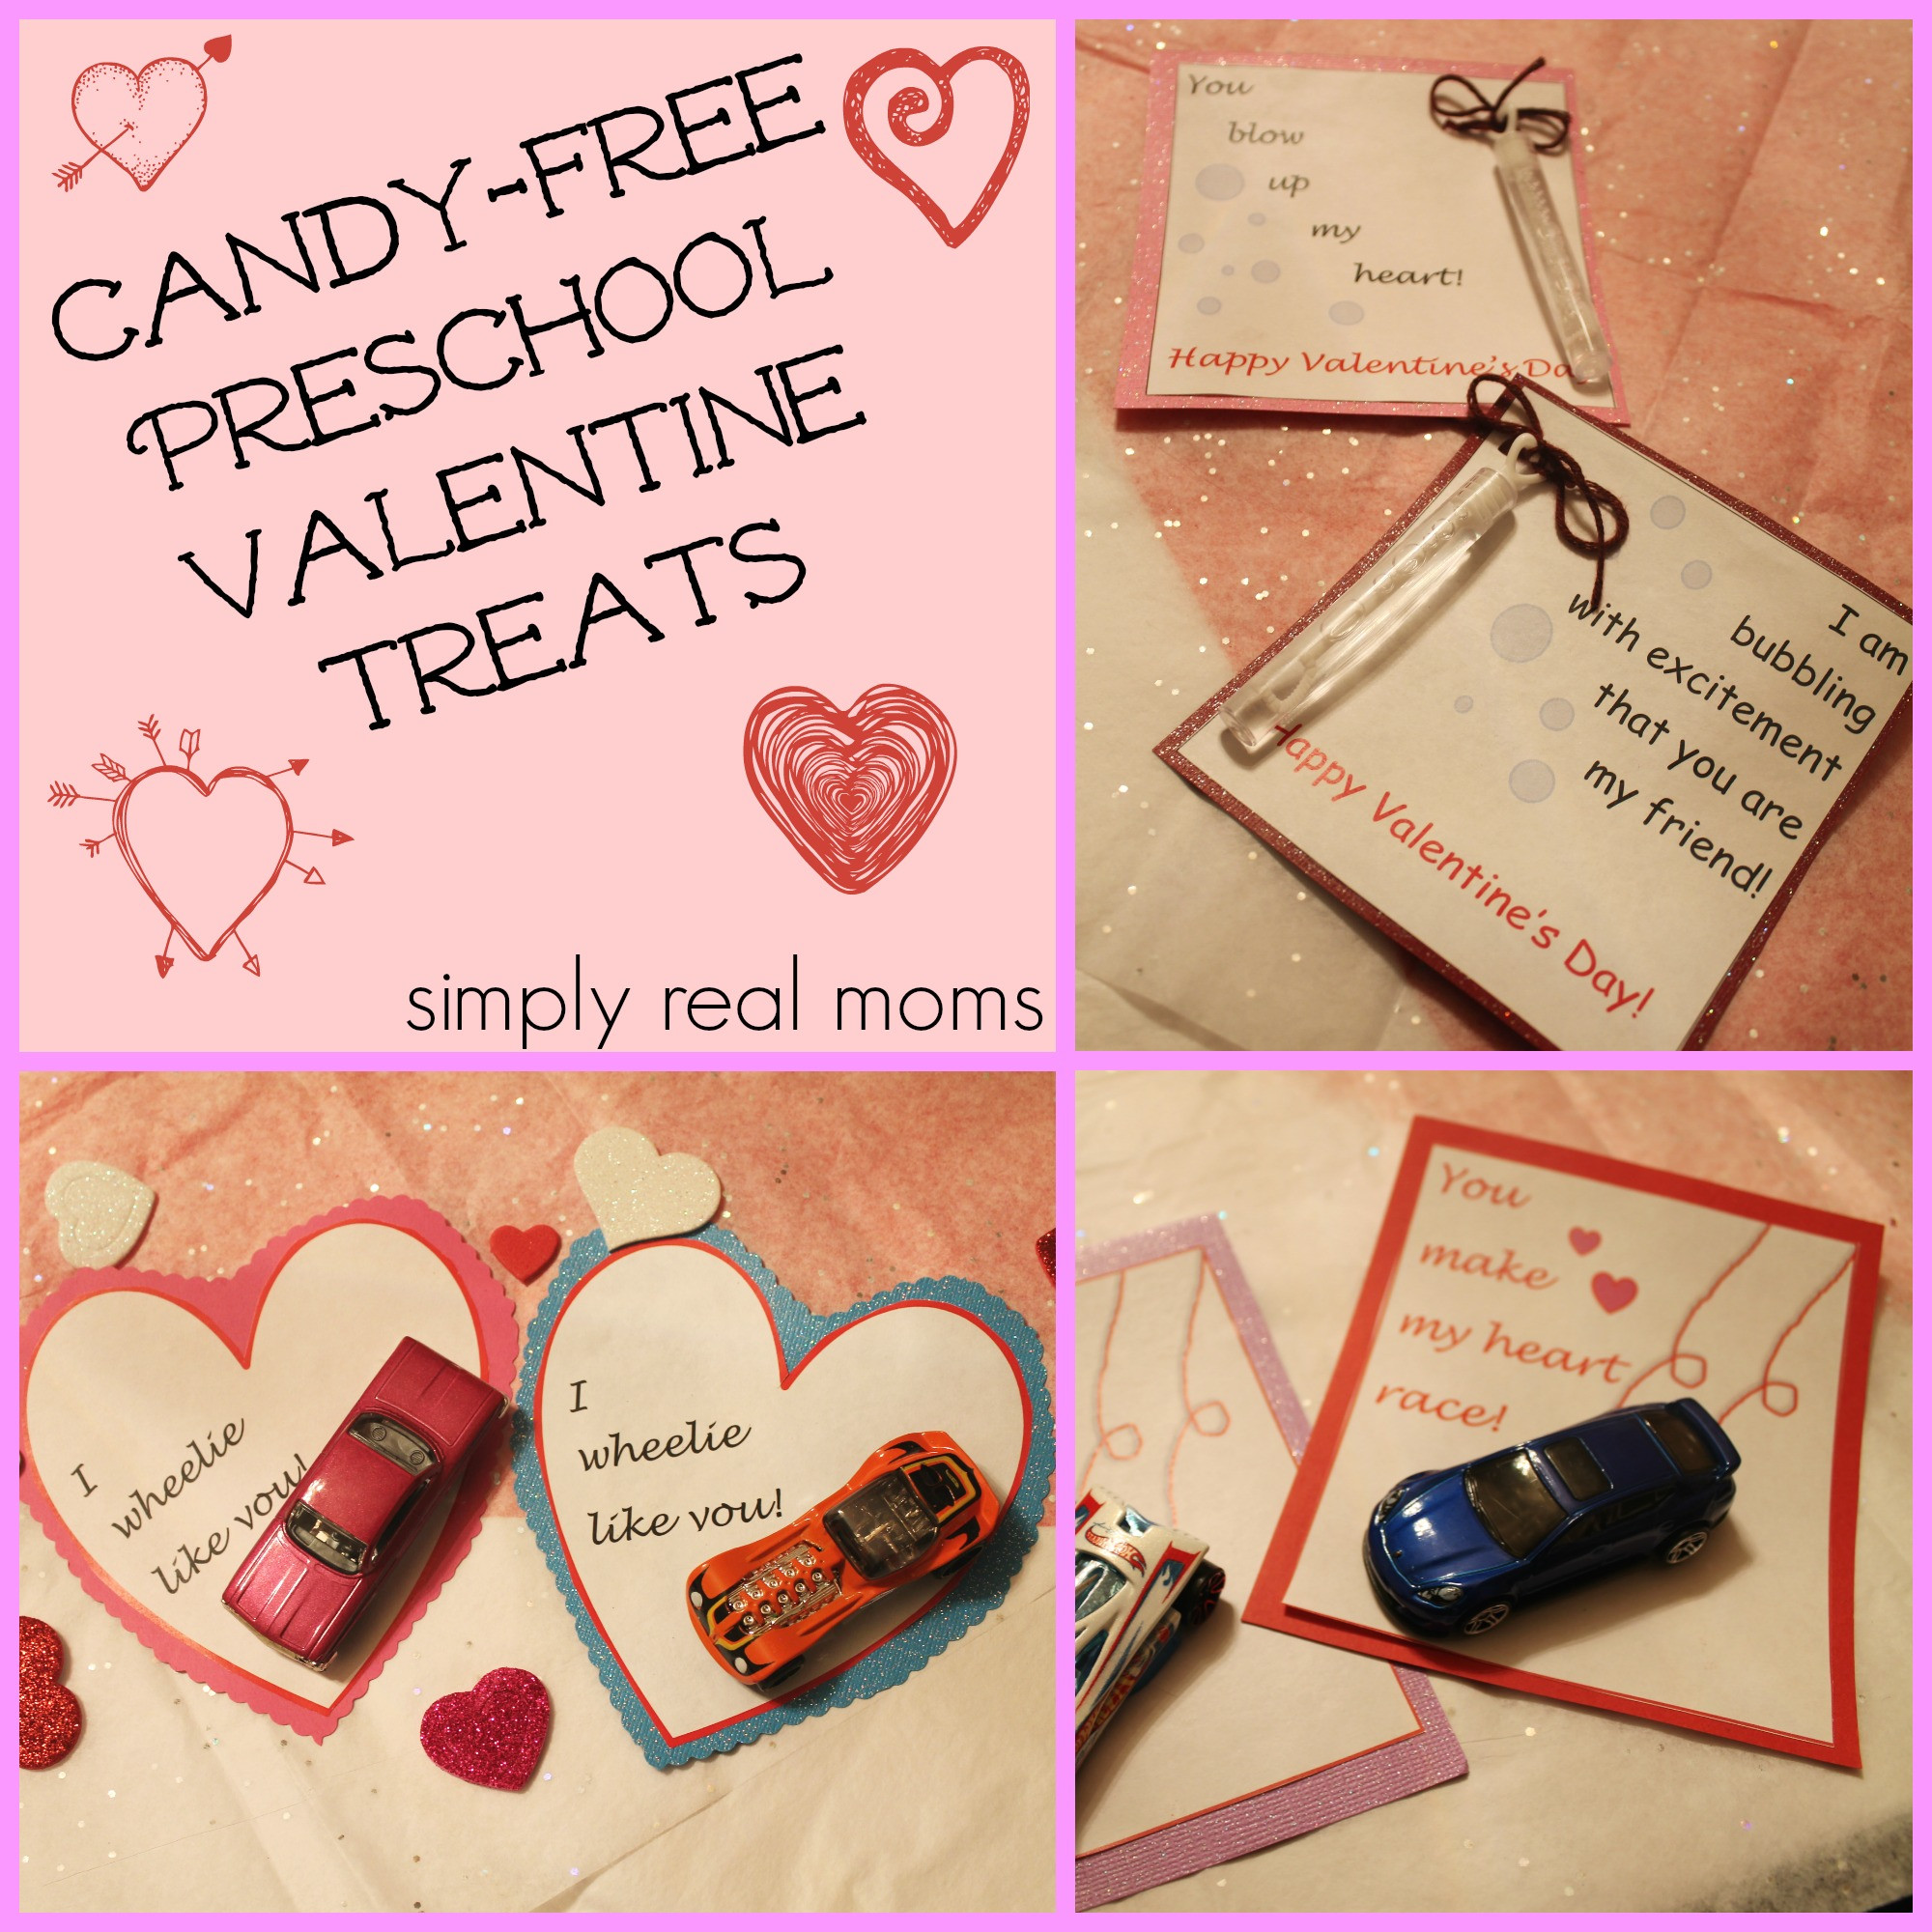 Valentine Gift Ideas For Kindergarten
 Candy Free Preschool Valentine Treats